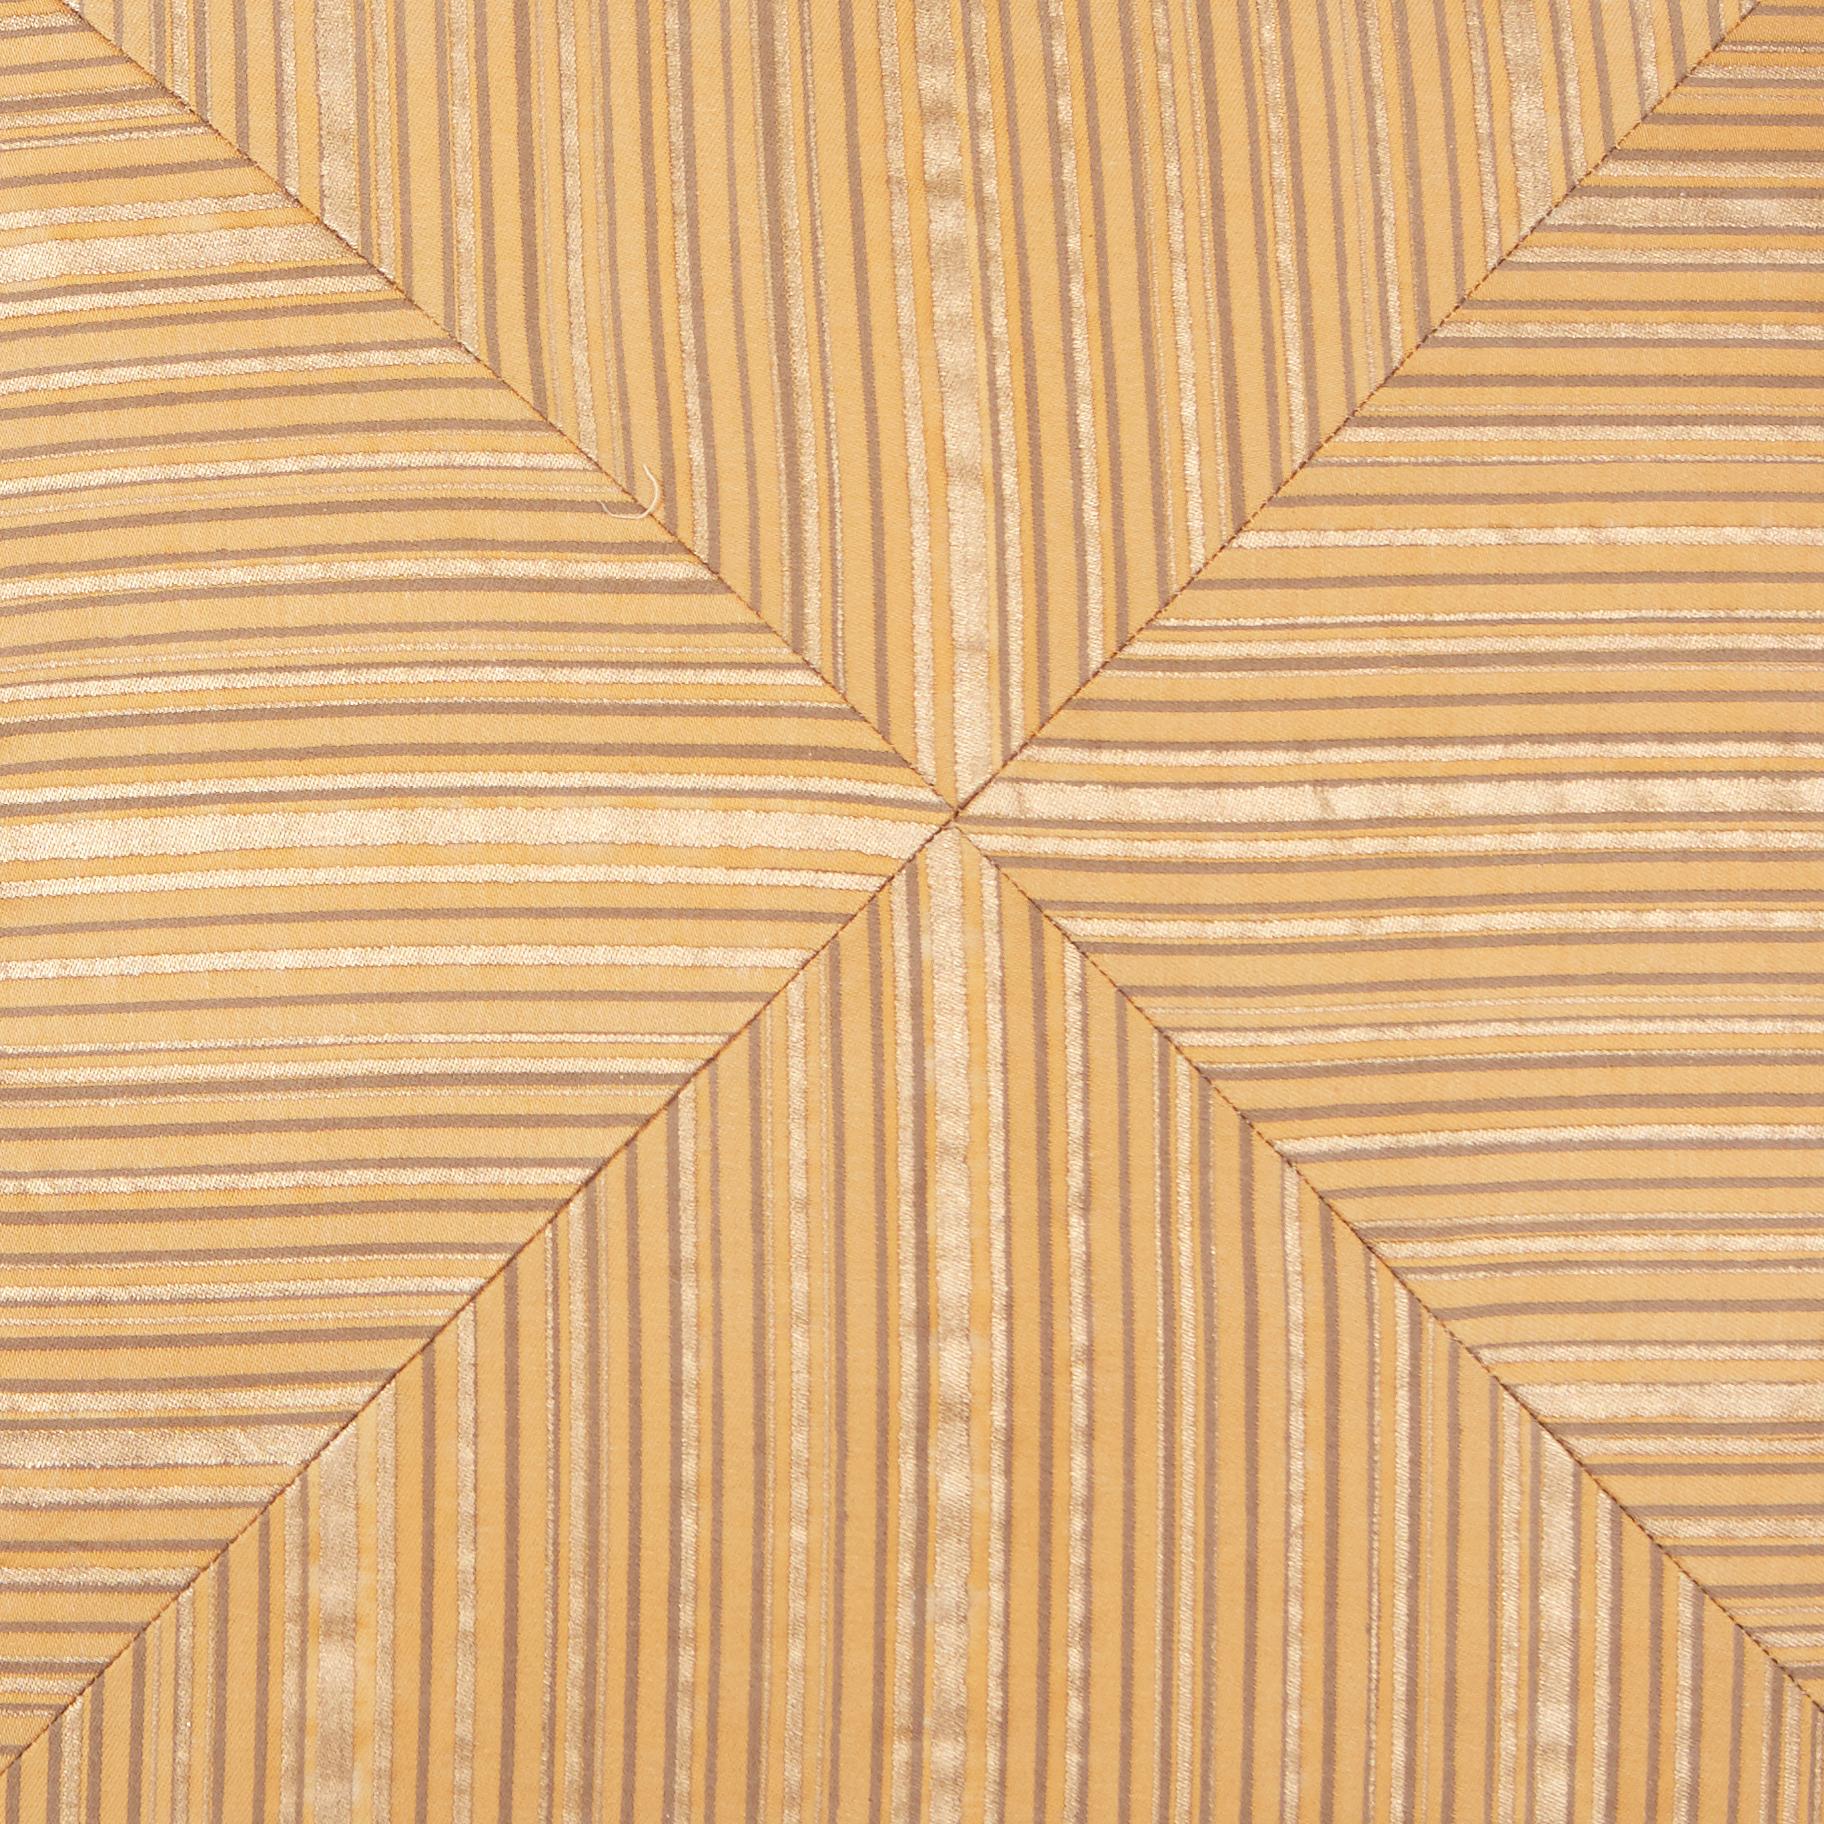 Ein Paar auf Gehrung geschnittene Fortuny-Stoffkissen im Malmaison-Muster in Hellbraun und Gold. Grundmaterial aus Seidenmischung und Schrägband aus Seide, braun und goldfarben mit hellbraunem Streifenmotiv. Das Muster ist nach der ehemaligen